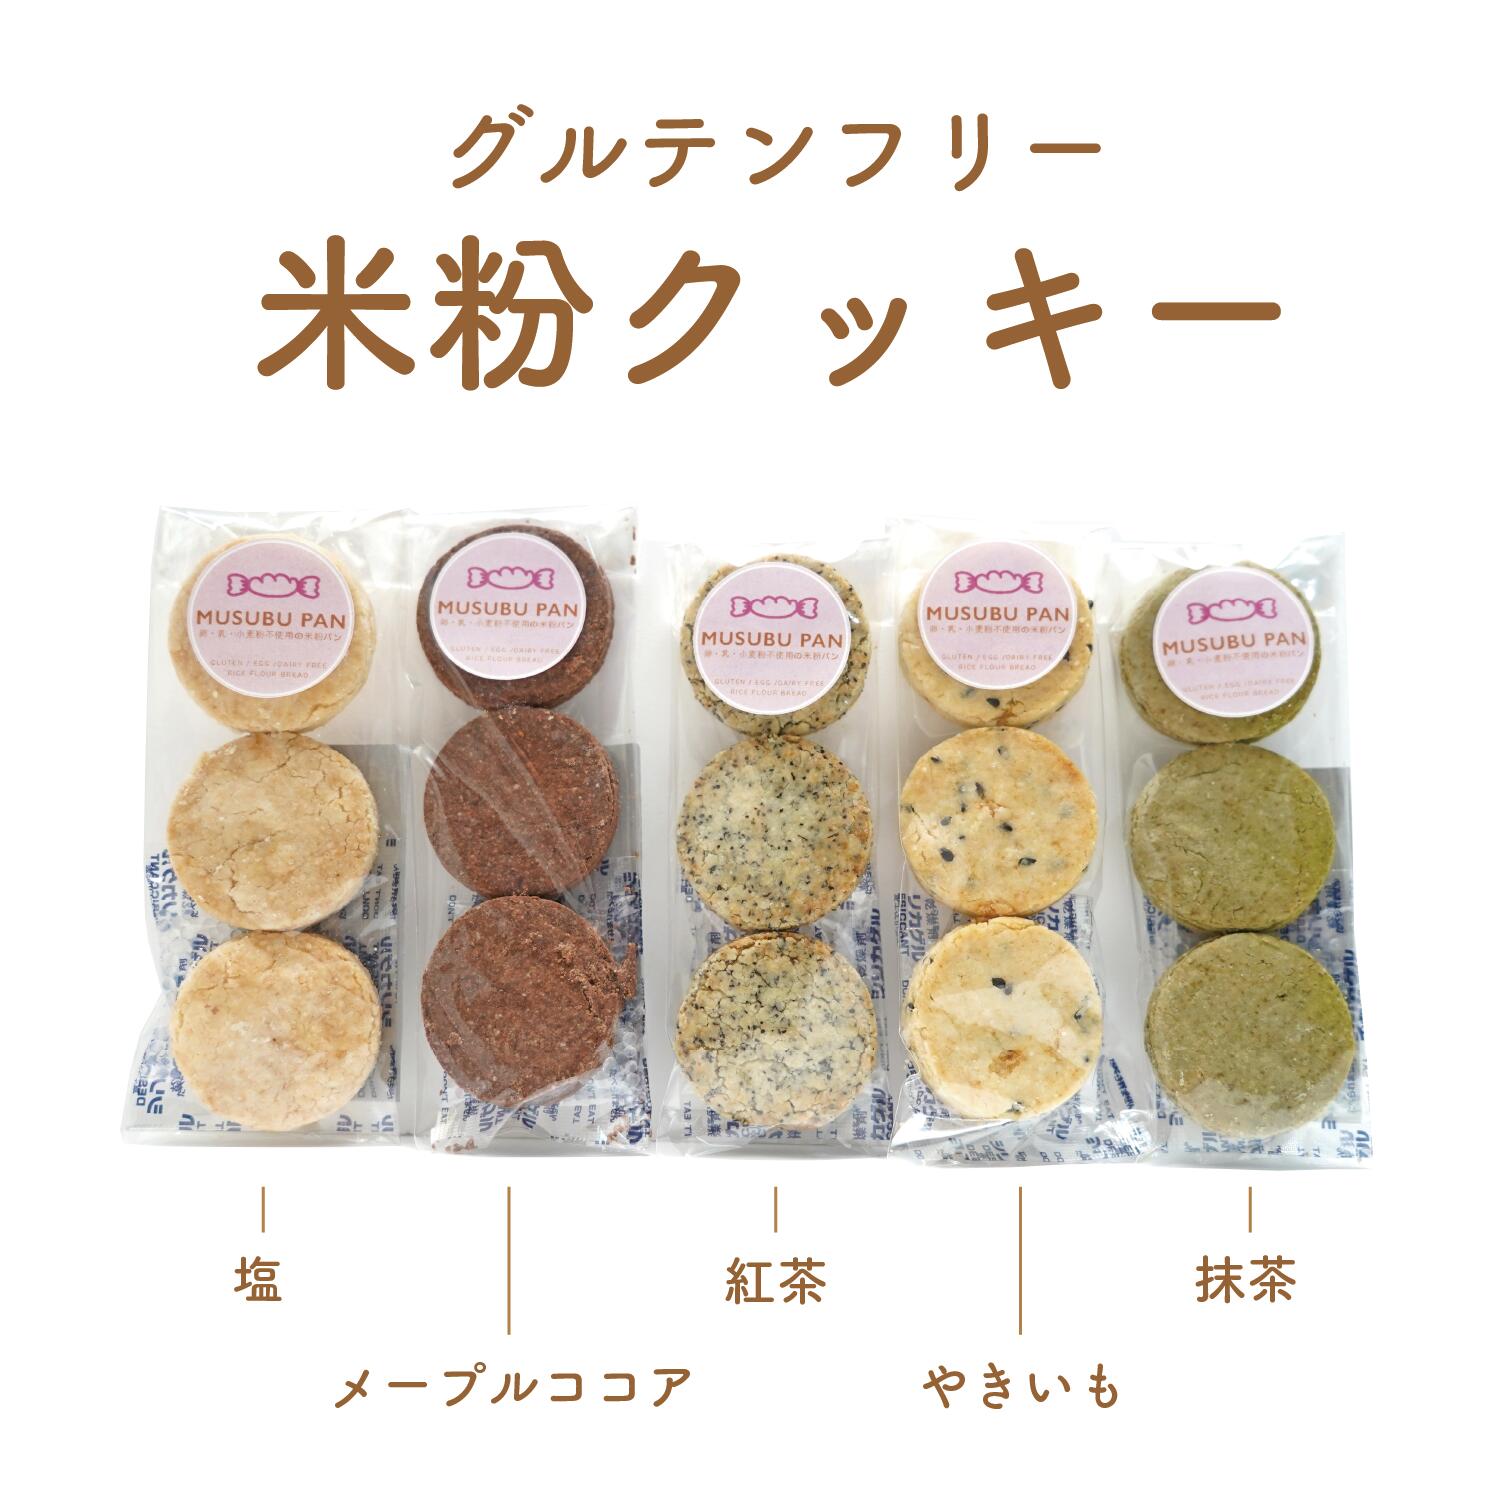 【楽天市場】グルテンフリー クッキー 米粉 2種類選べる 1000円